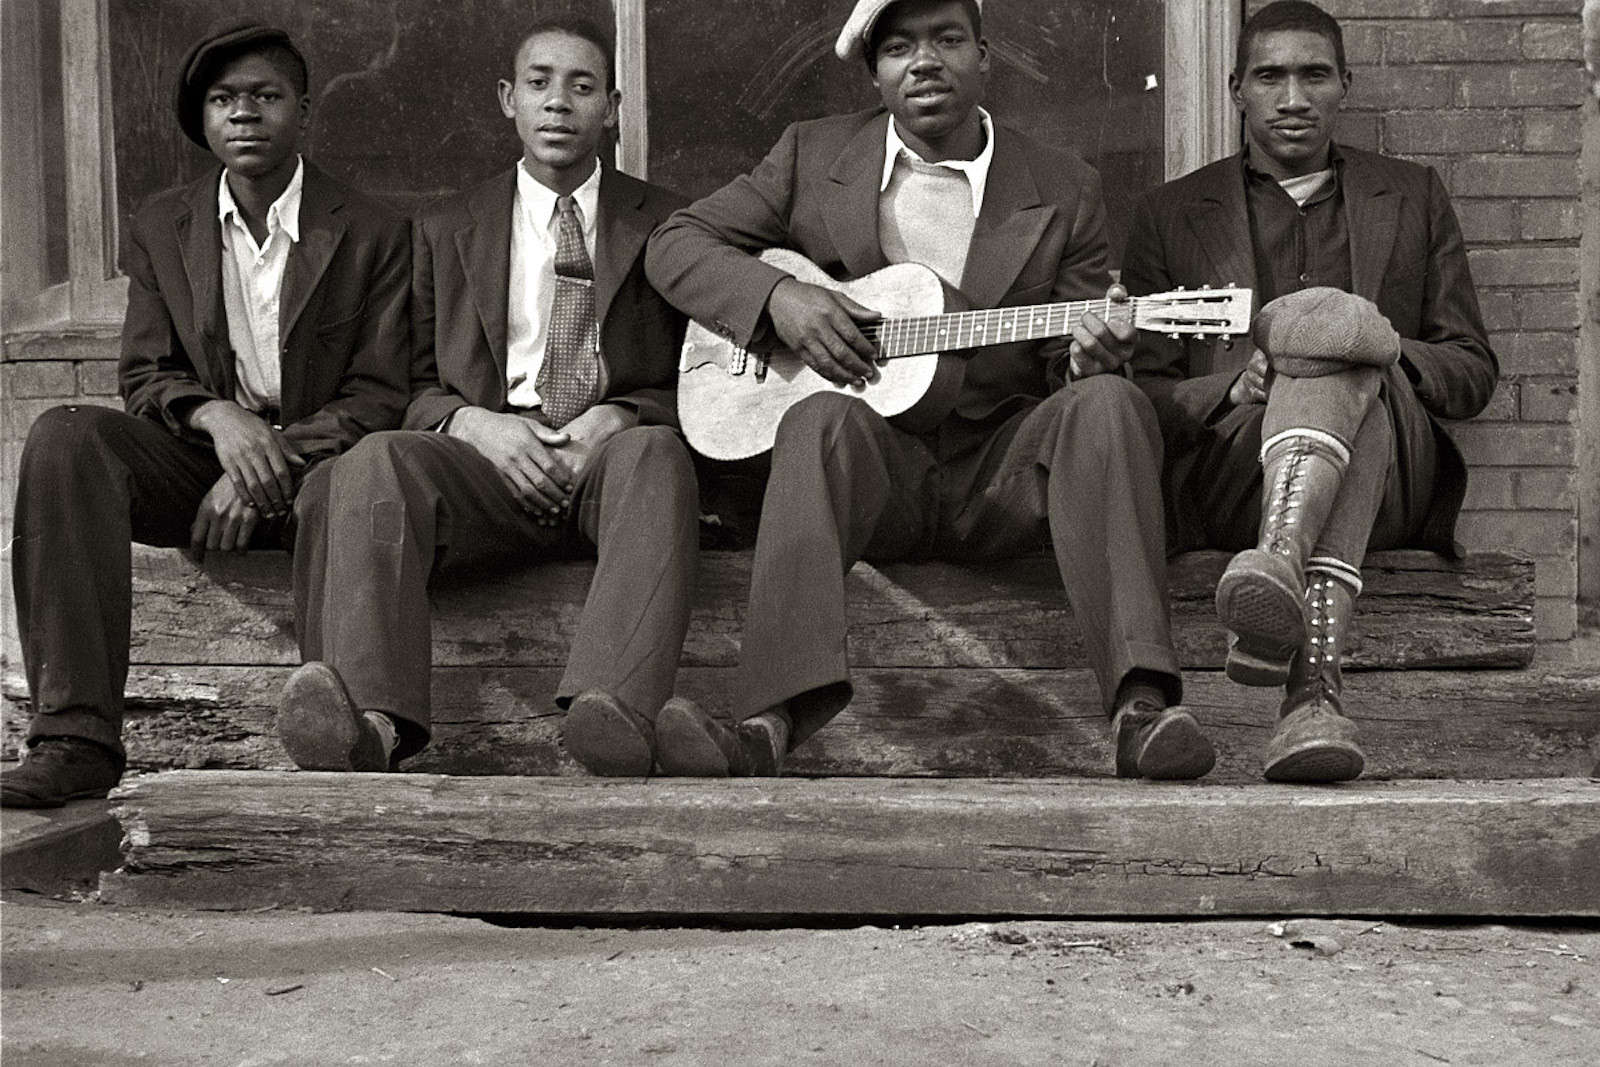 Негр винтаж. Афроамериканцы в США 1920 джаз. Джаз в 20-е годы в США. Афроамериканцы в Америке в 1920-е. Негритянская культура 20 века.